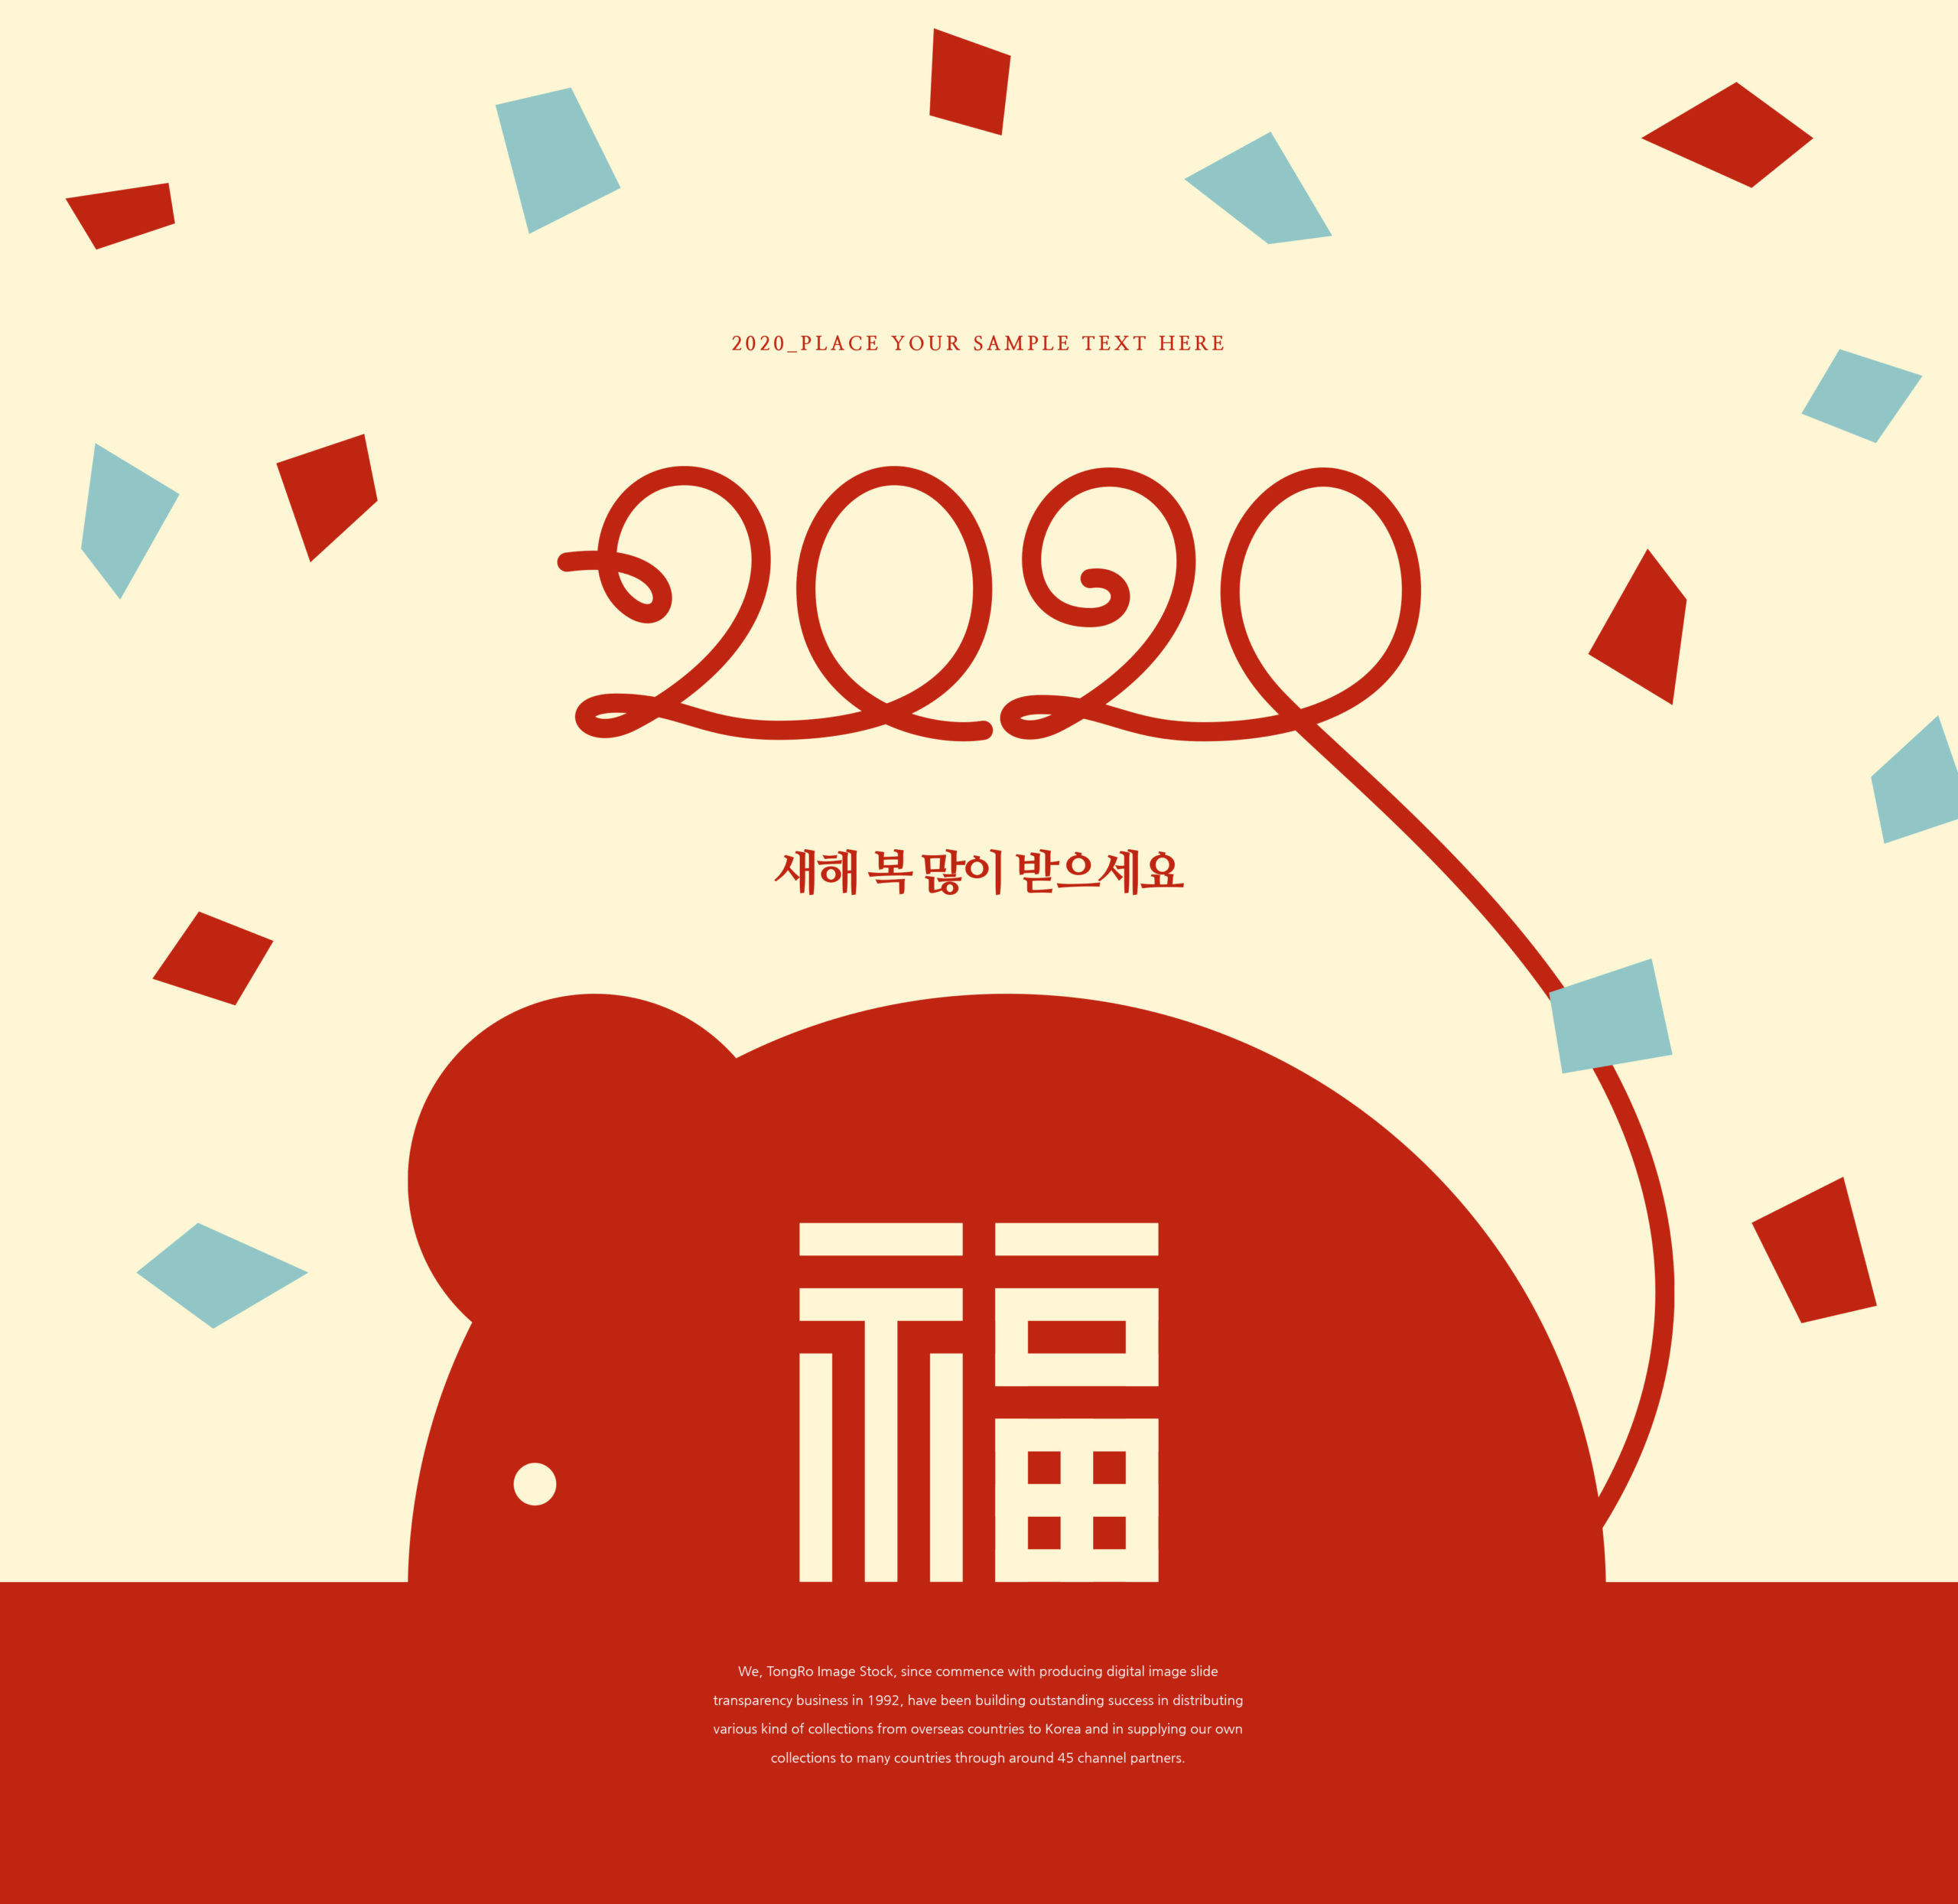 2020鼠年福到新年快乐主题海报模板[PSD]插图